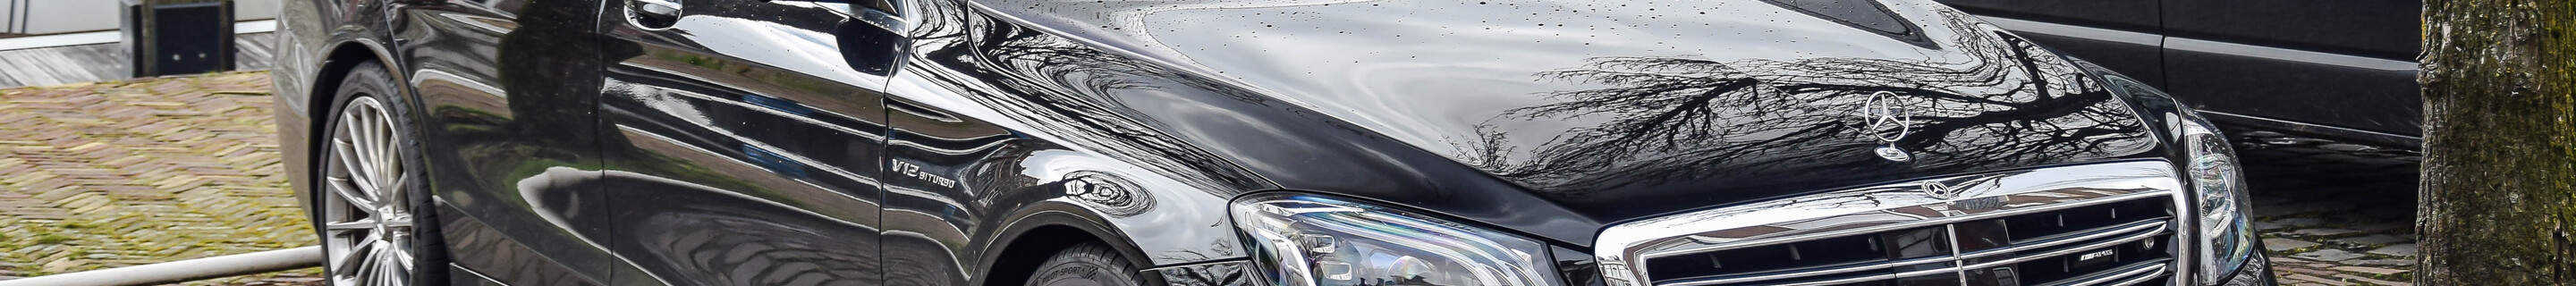 Mercedes-AMG S 65 V222 2017